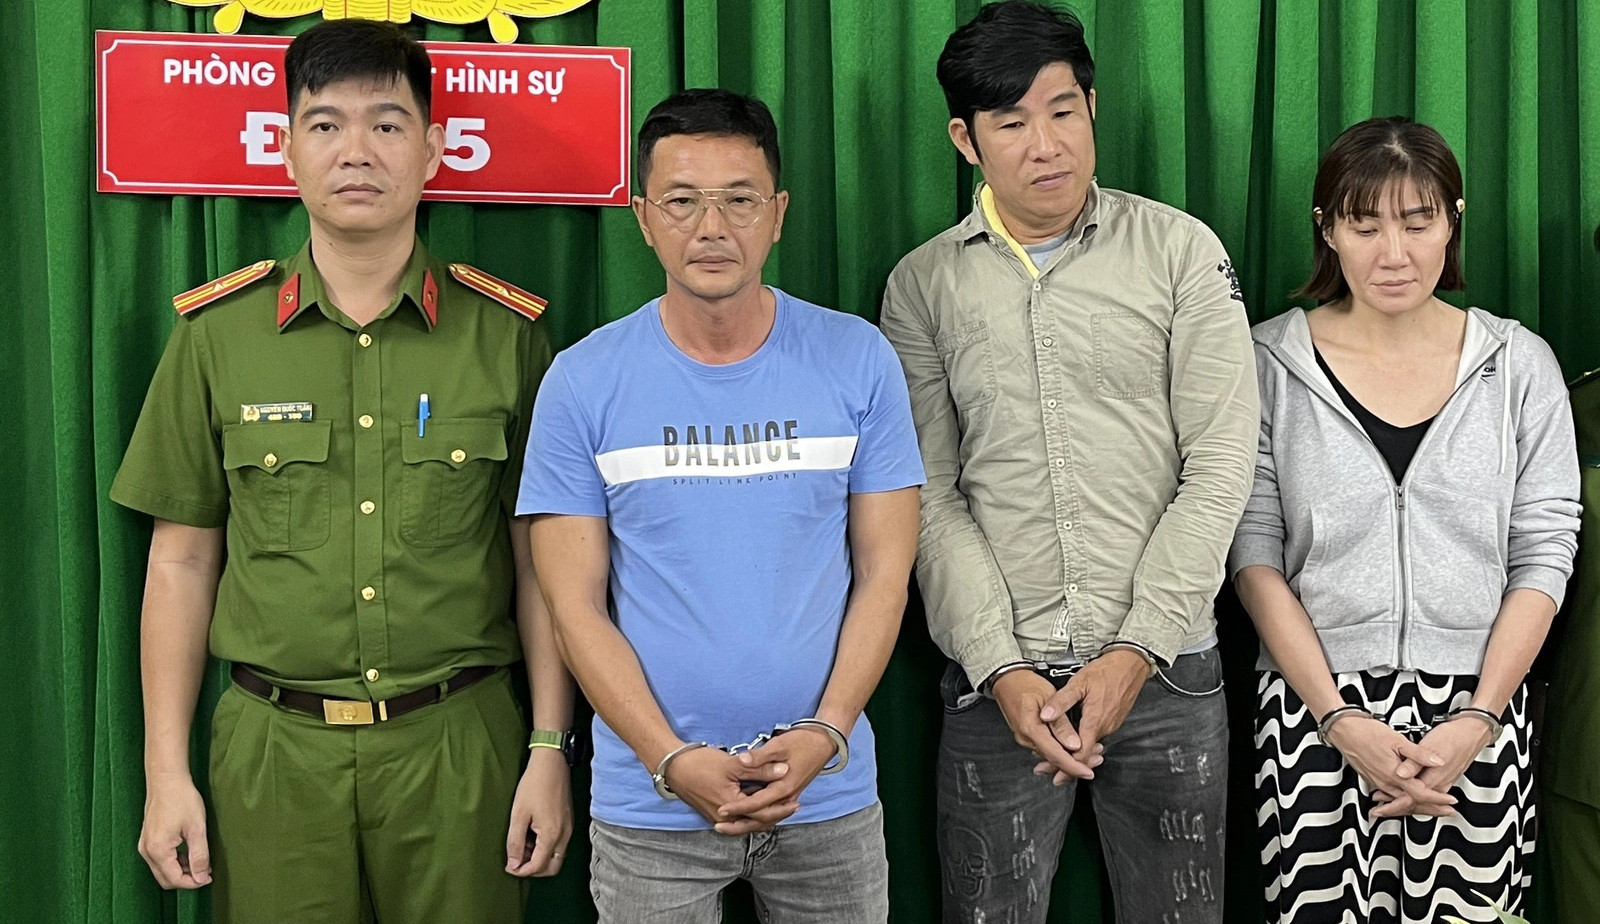 Nhóm của đối tượng Nguyễn Tấn Hùng tại cơ quan công an - Ảnh: Công an cung cấp